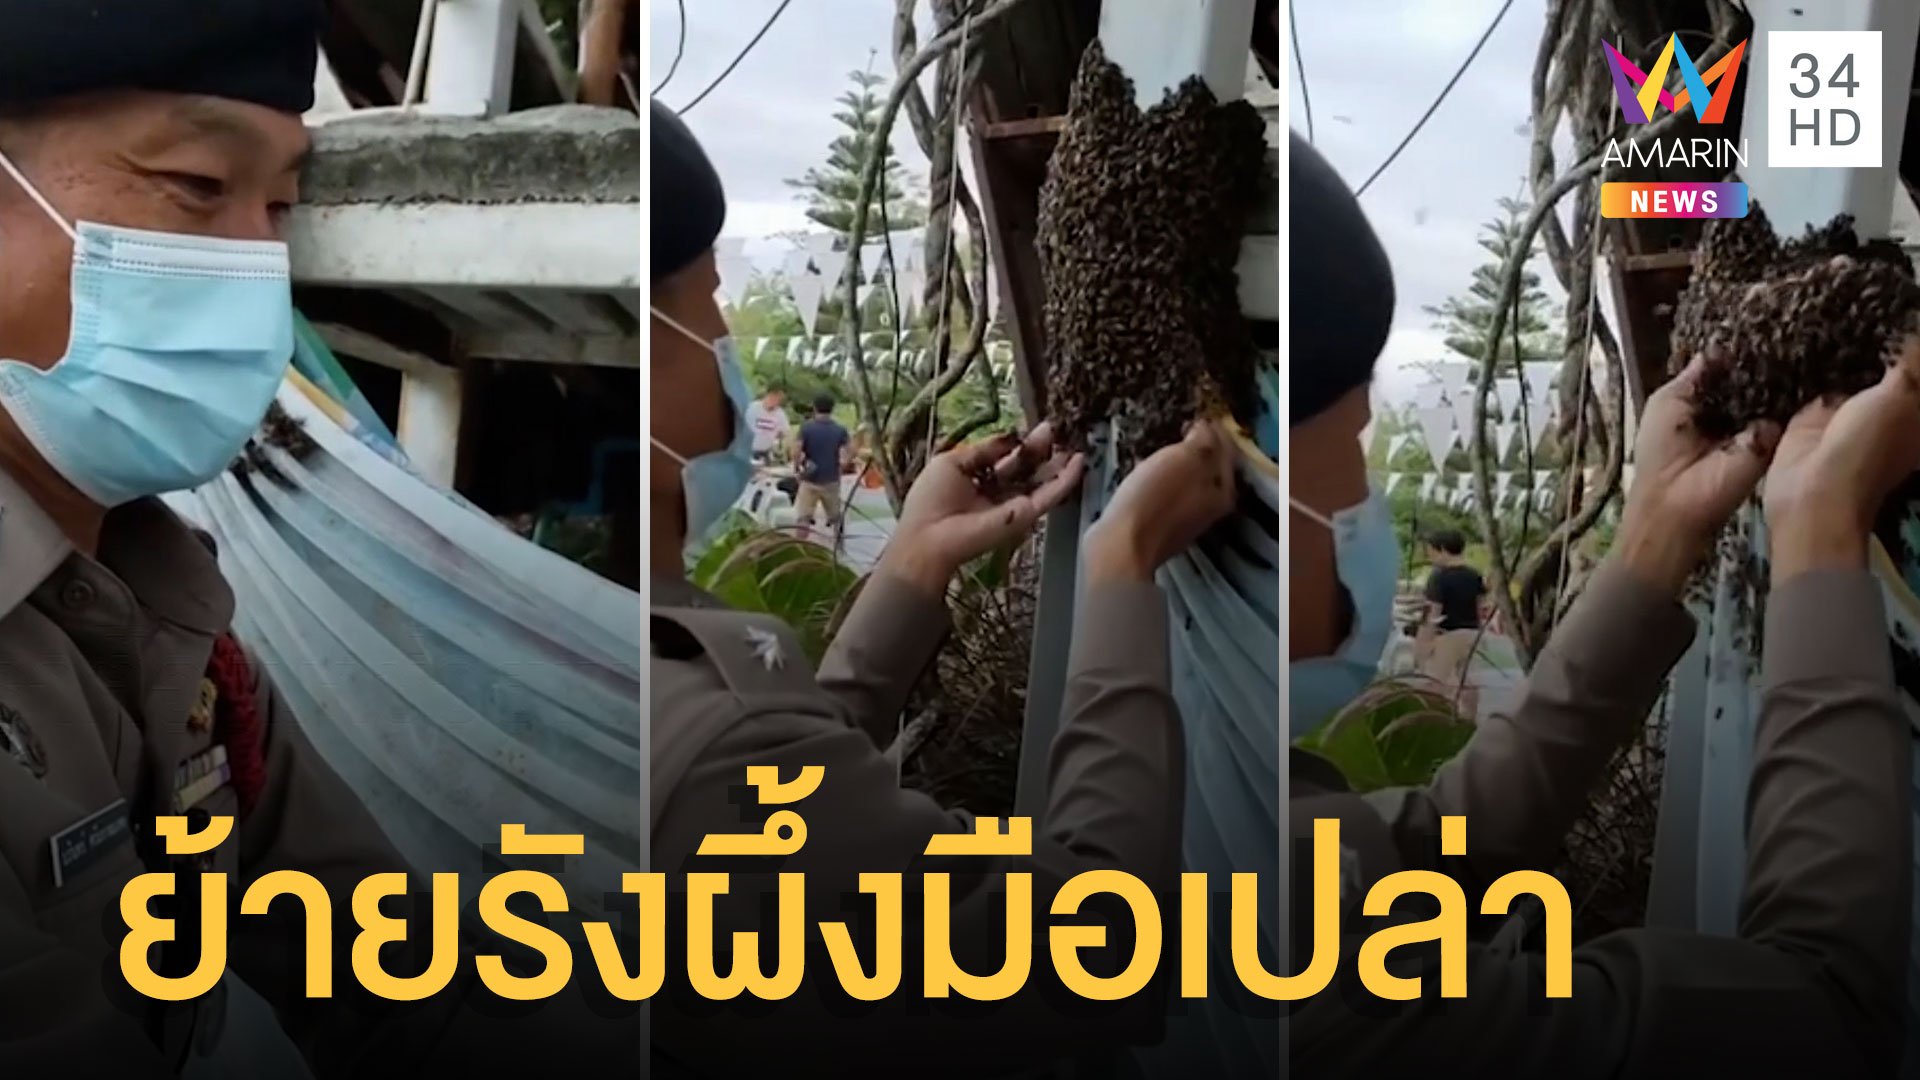 ตร.จอมขมังเวทย์ ร่ายคาถาสะกดผึ้ง ย้ายรังโดยใช้มือเปล่า | ข่าวเที่ยงอมรินทร์ | 7 พ.ค. 65 | AMARIN TVHD34